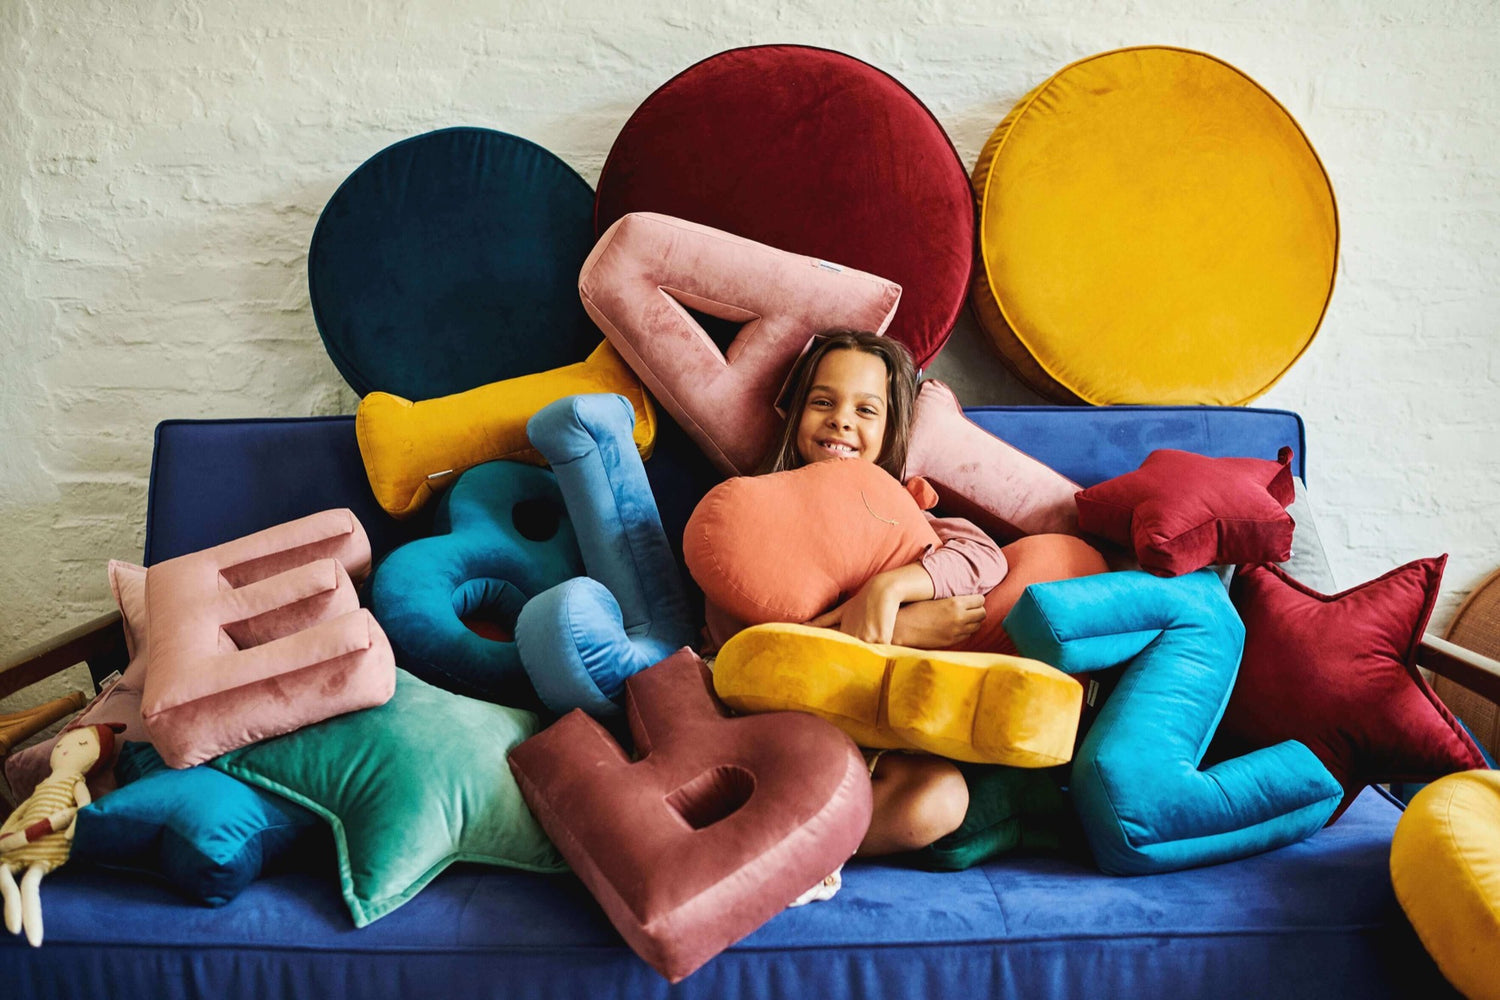 dziewczynka siedząca na kanapie, przykryta poduszkami literkami welurowymi i pufami welurowymi